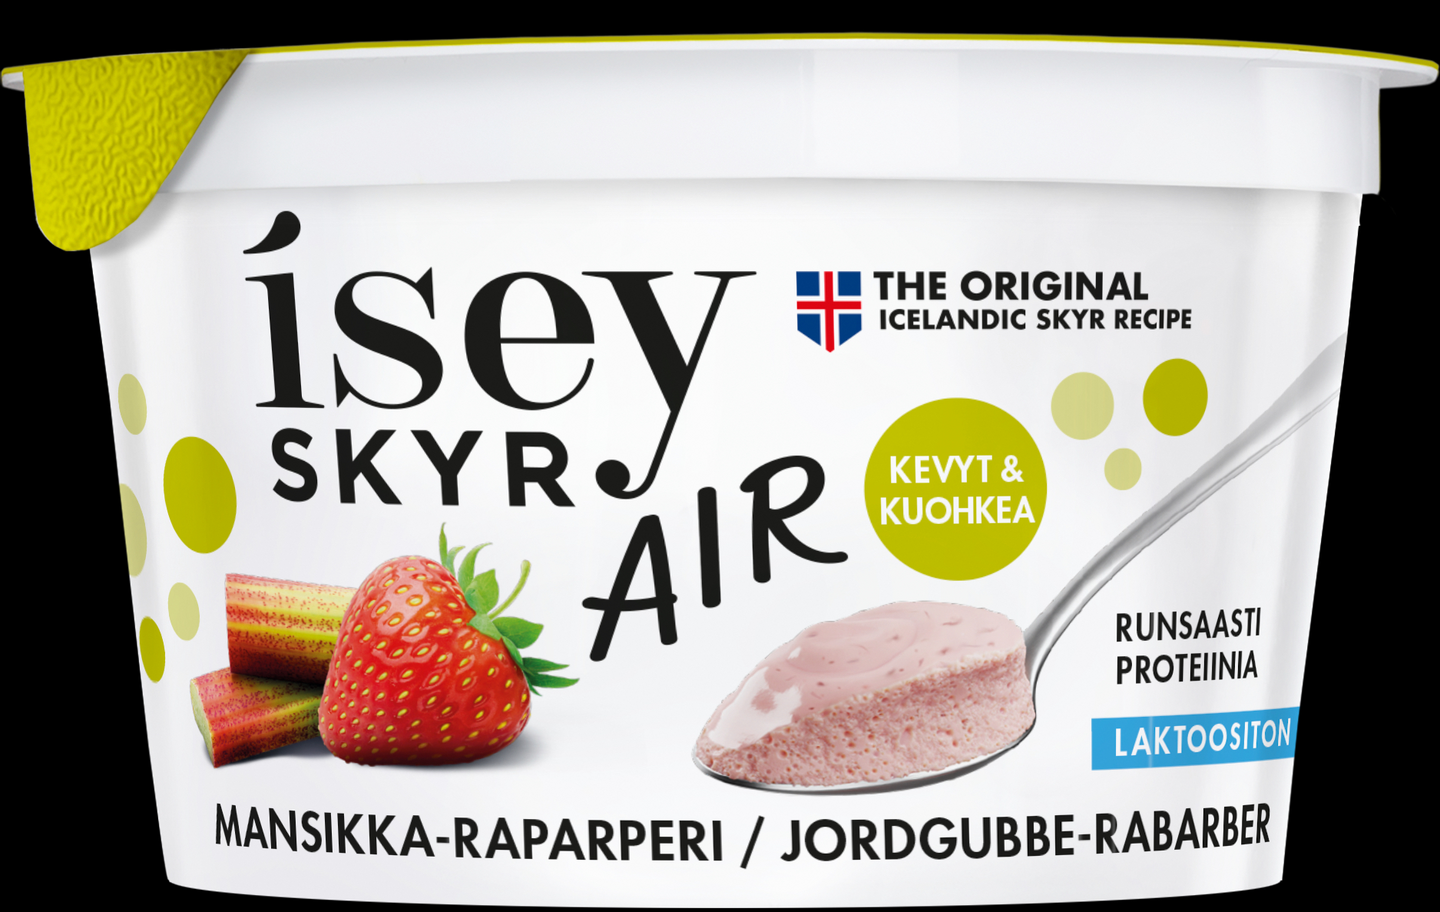 Isey Skyr Air mansikka-raparperi laktoositon 125g